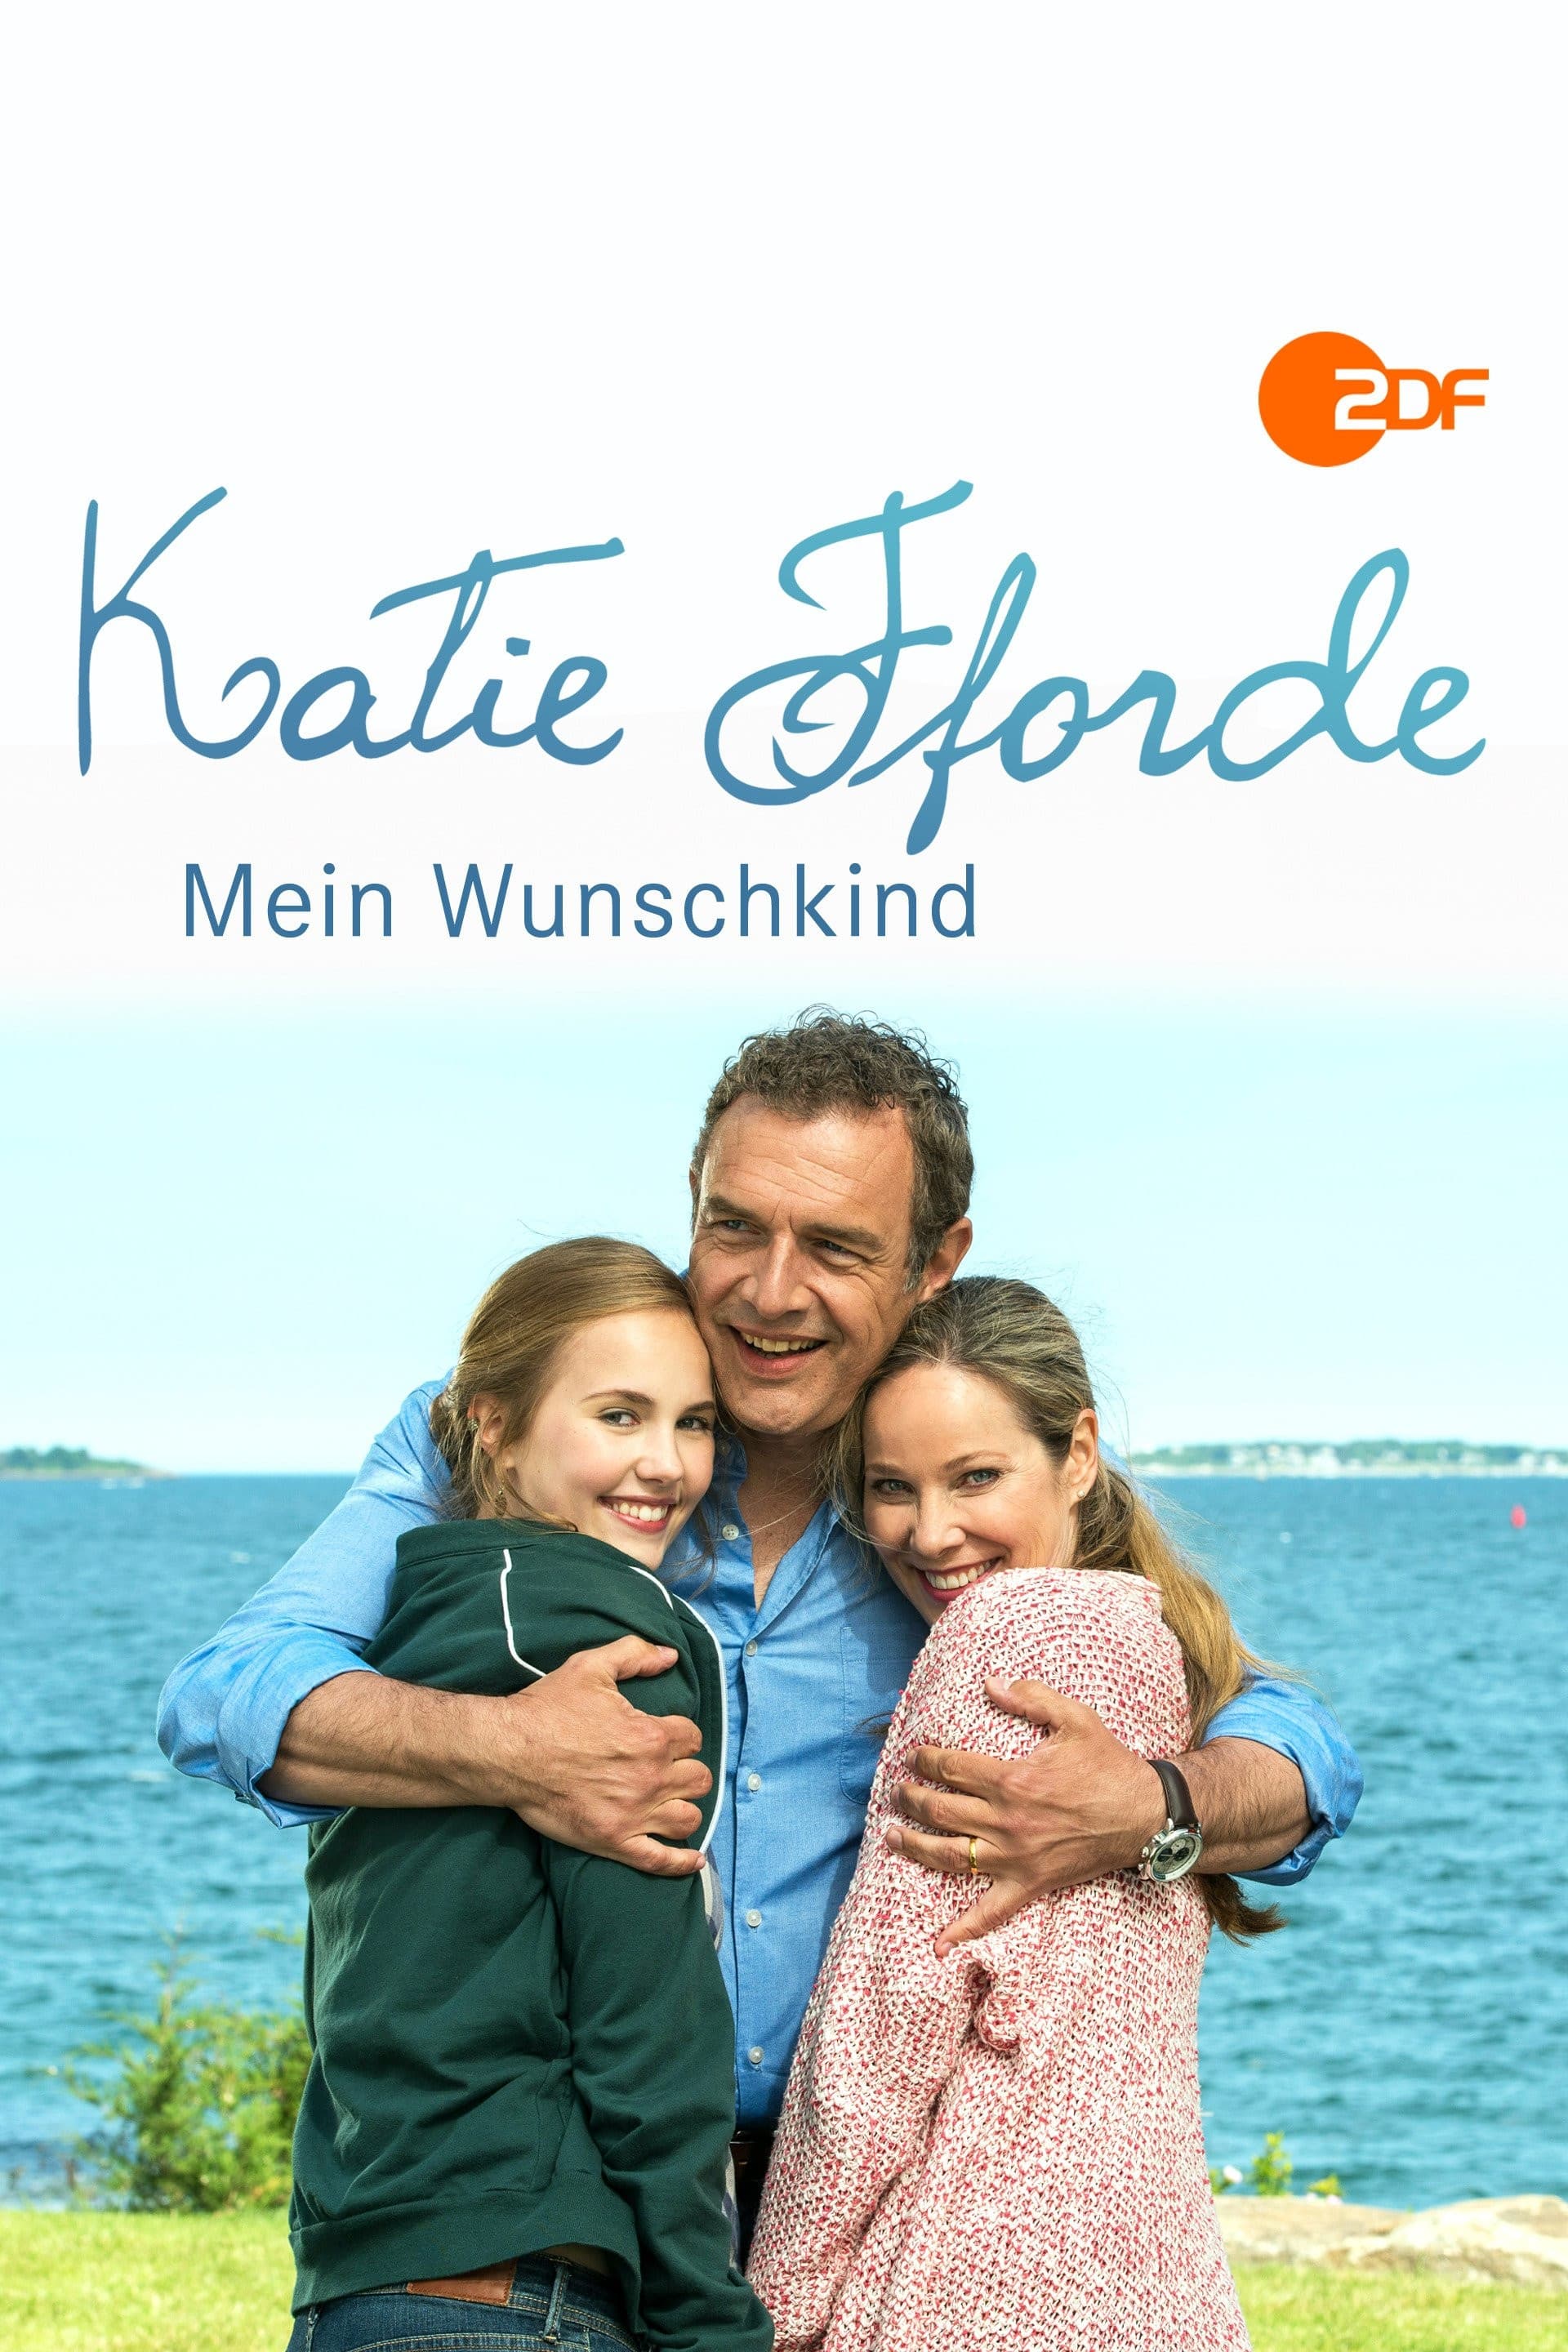 Katie Fforde: Mein Wunschkind (2015)